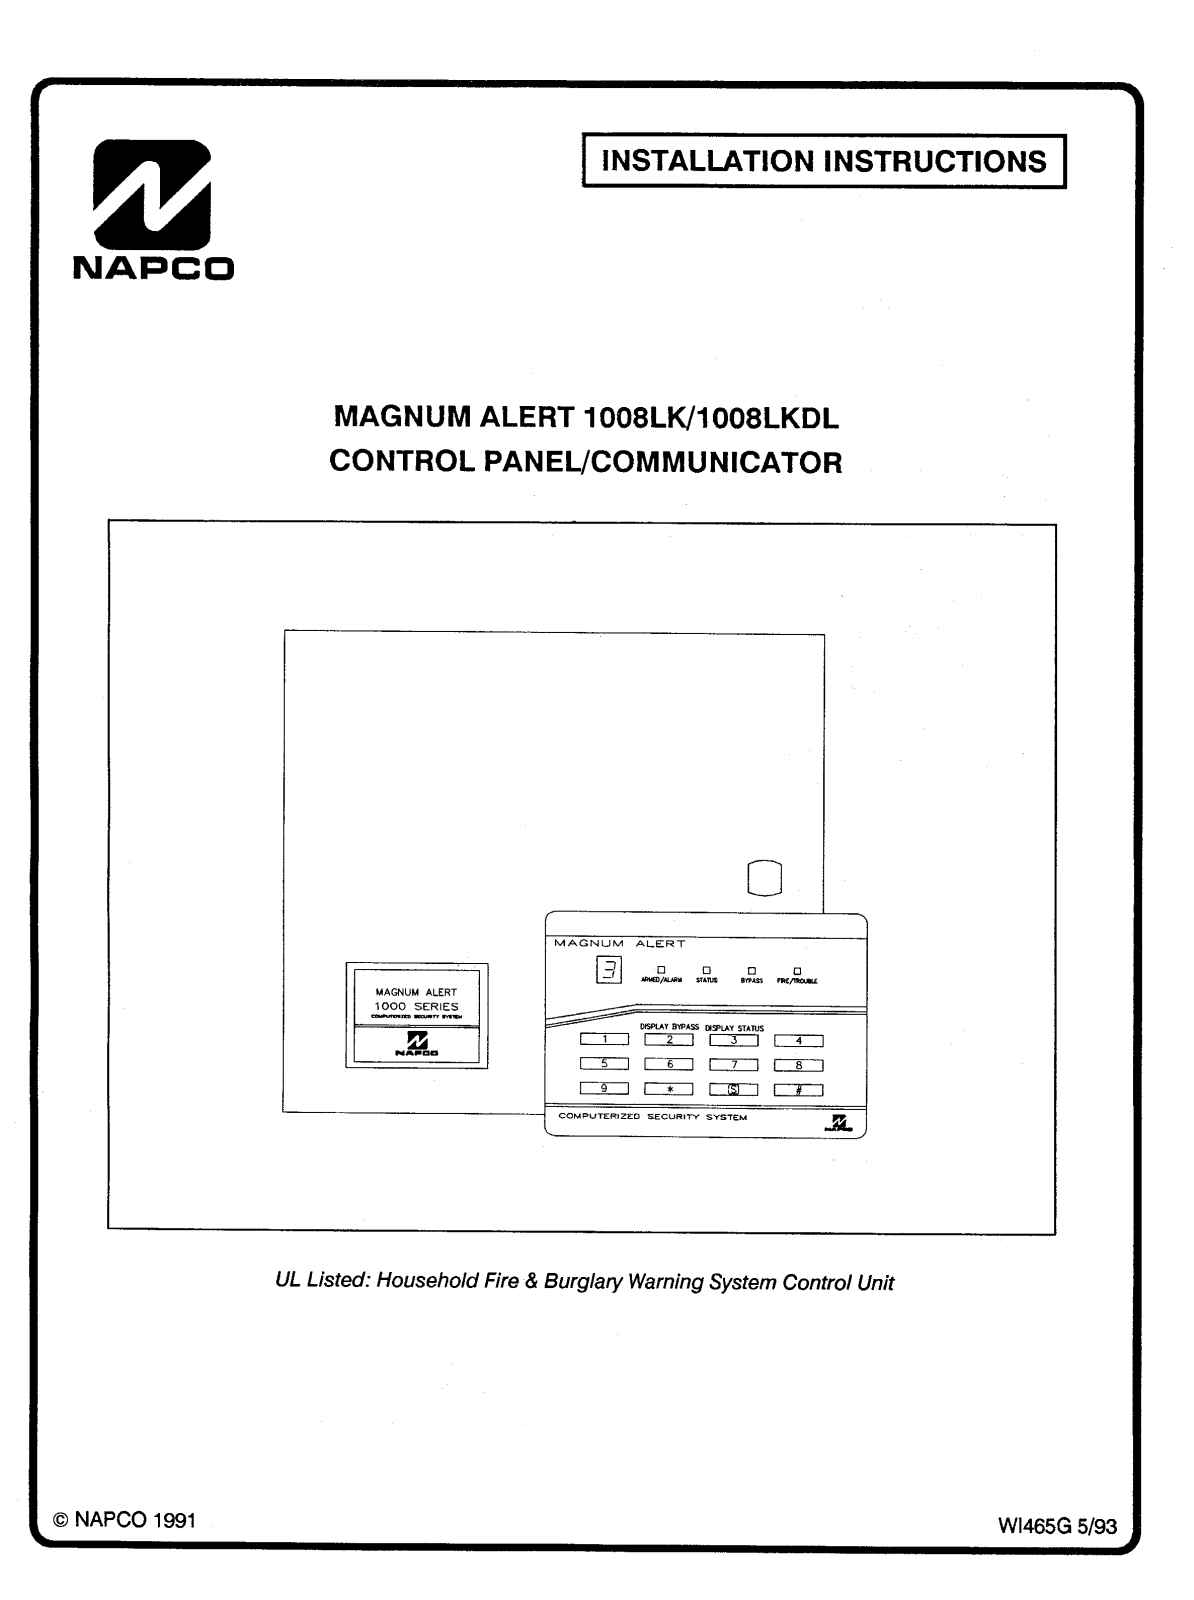 NAPCO MA1008LKDL Installation Manual